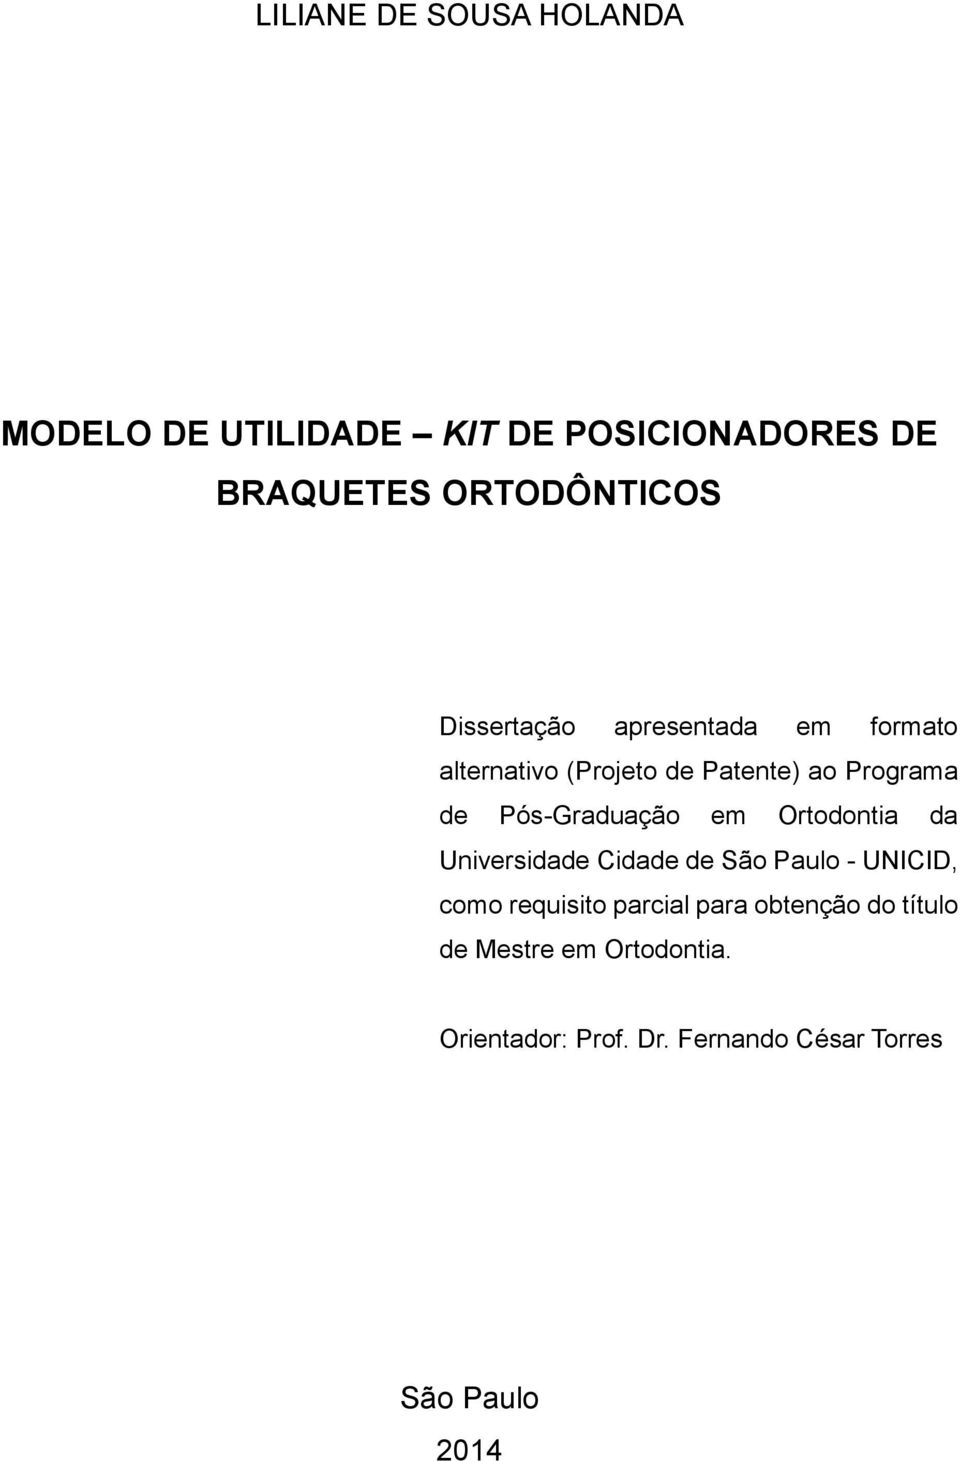 Pós-Graduação em Ortodontia da Universidade Cidade de São Paulo - UNICID, como requisito